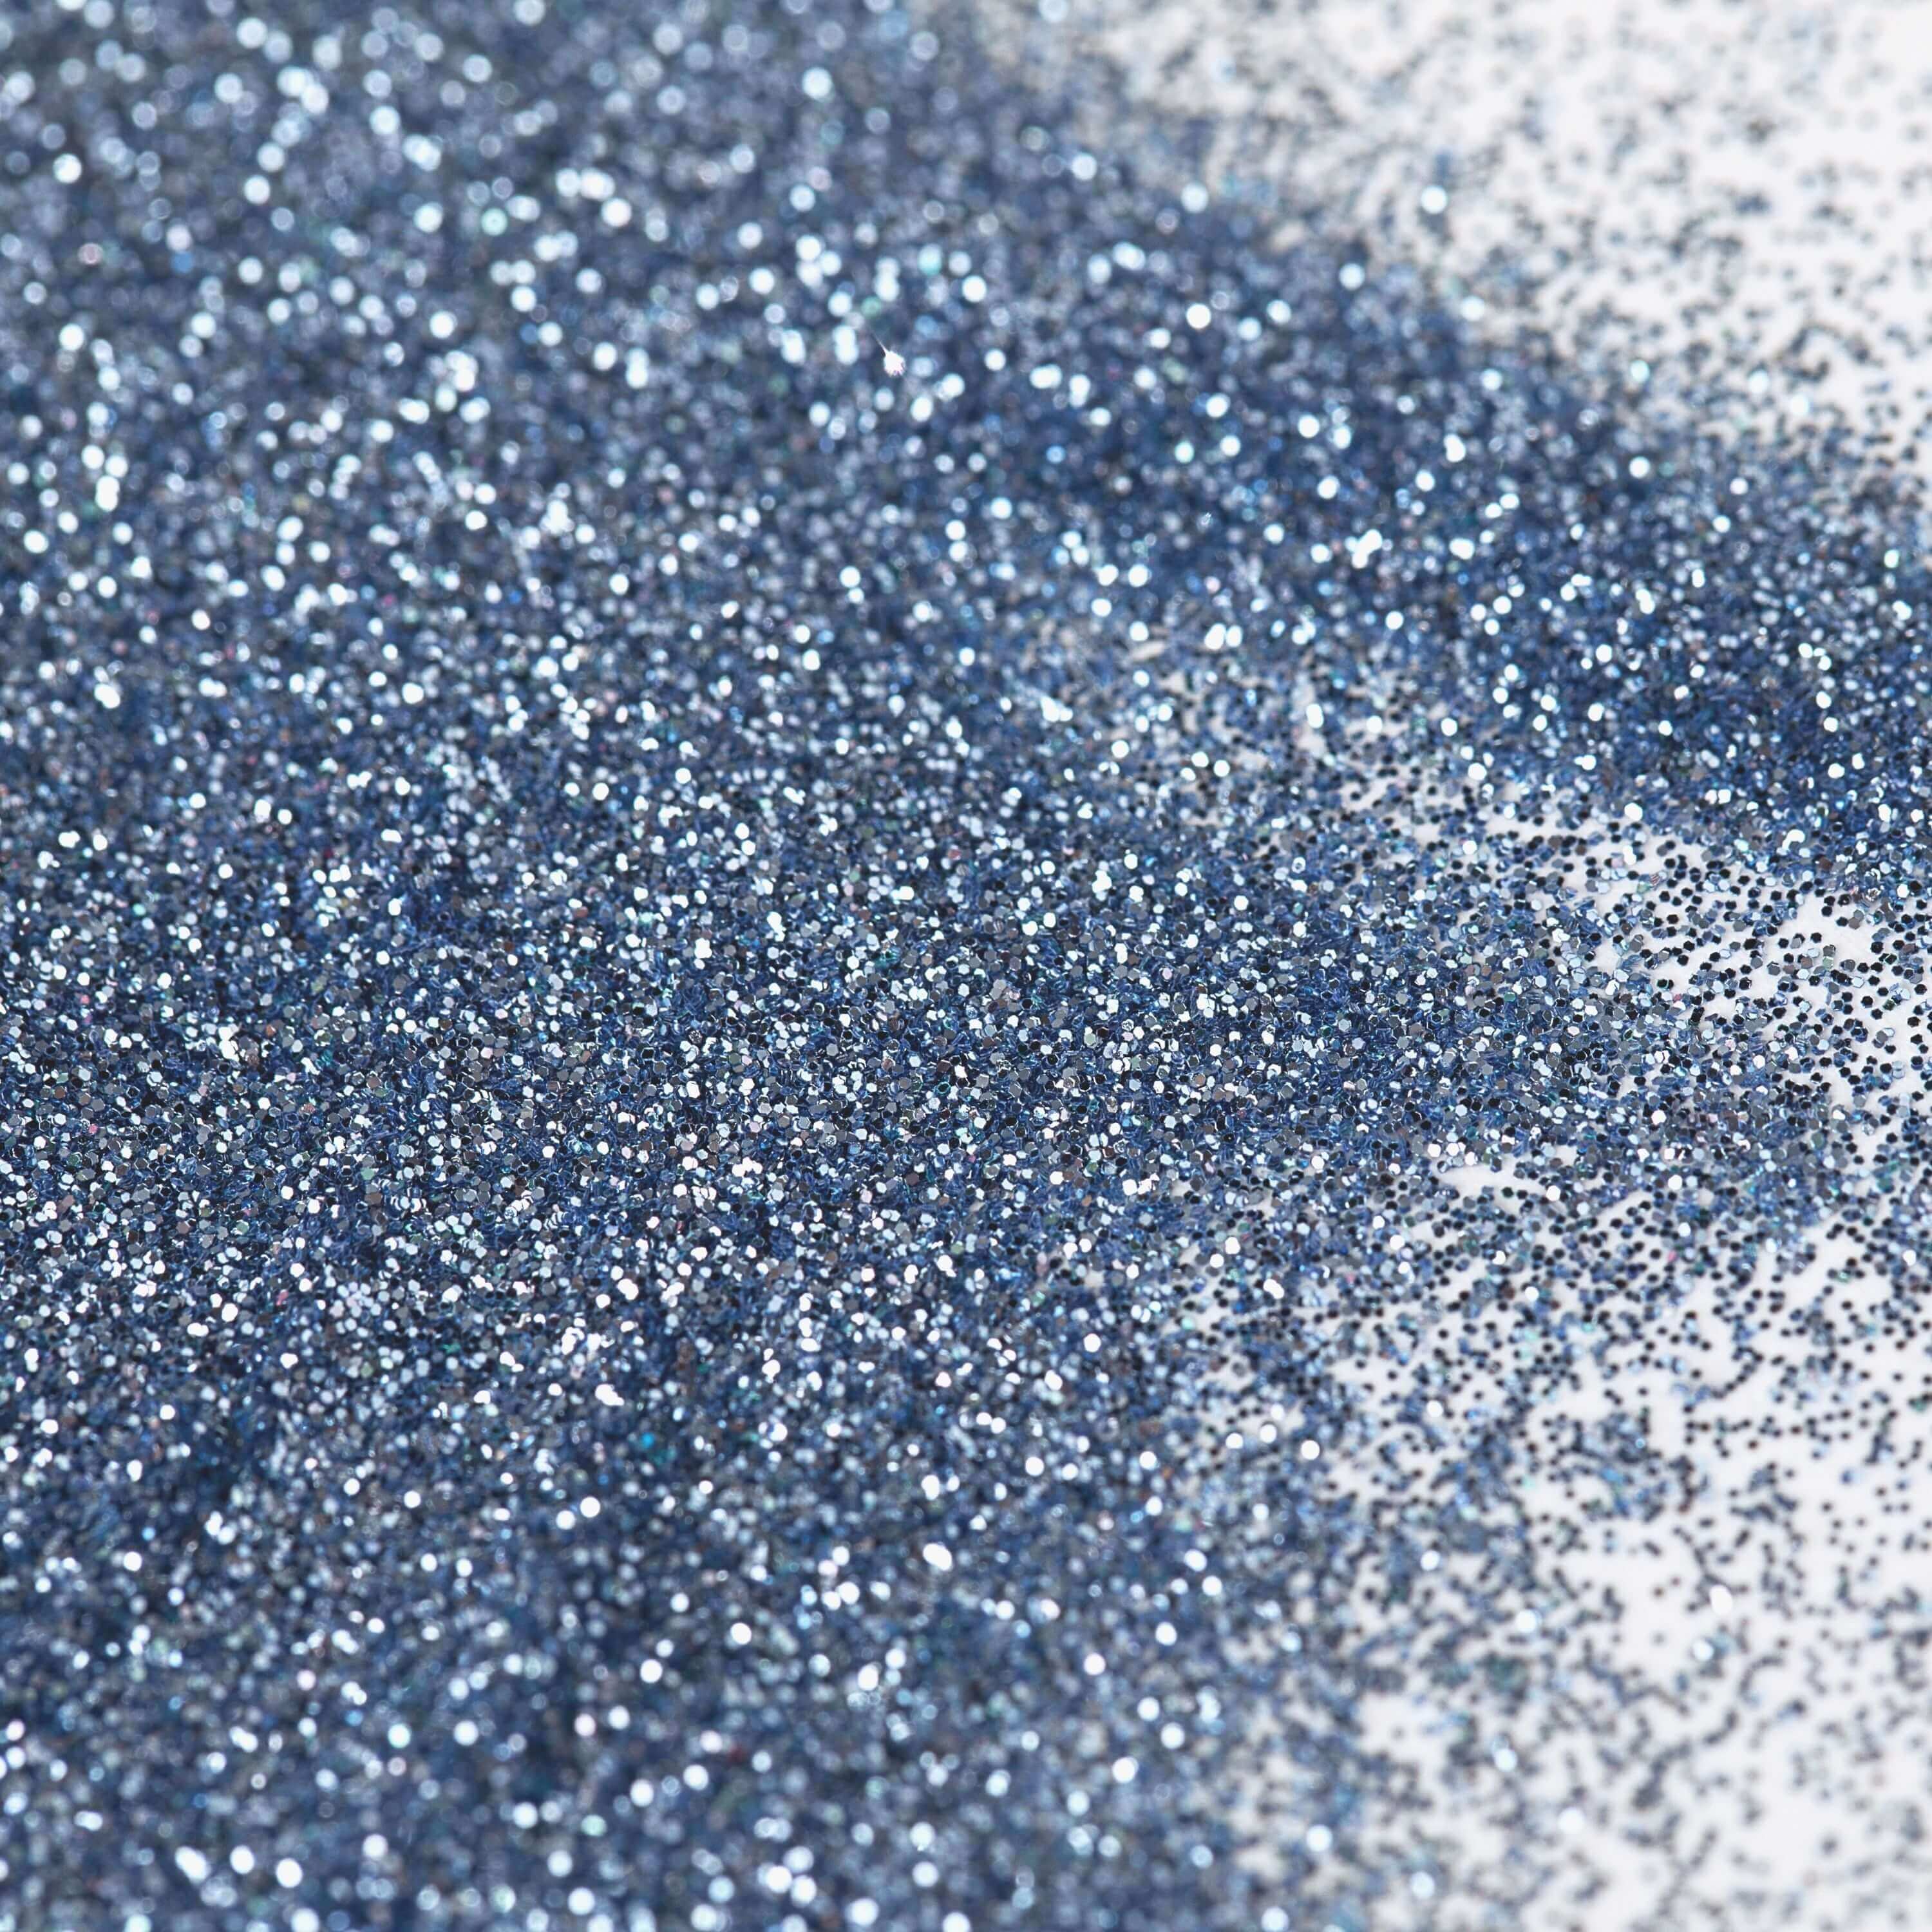 MEYSPRING Sapphire Sparkle - Blue Glitter for Resin - 50g - Fine Glitter for Crafts - Light Blue Glitter - Resin Glitter - Blue